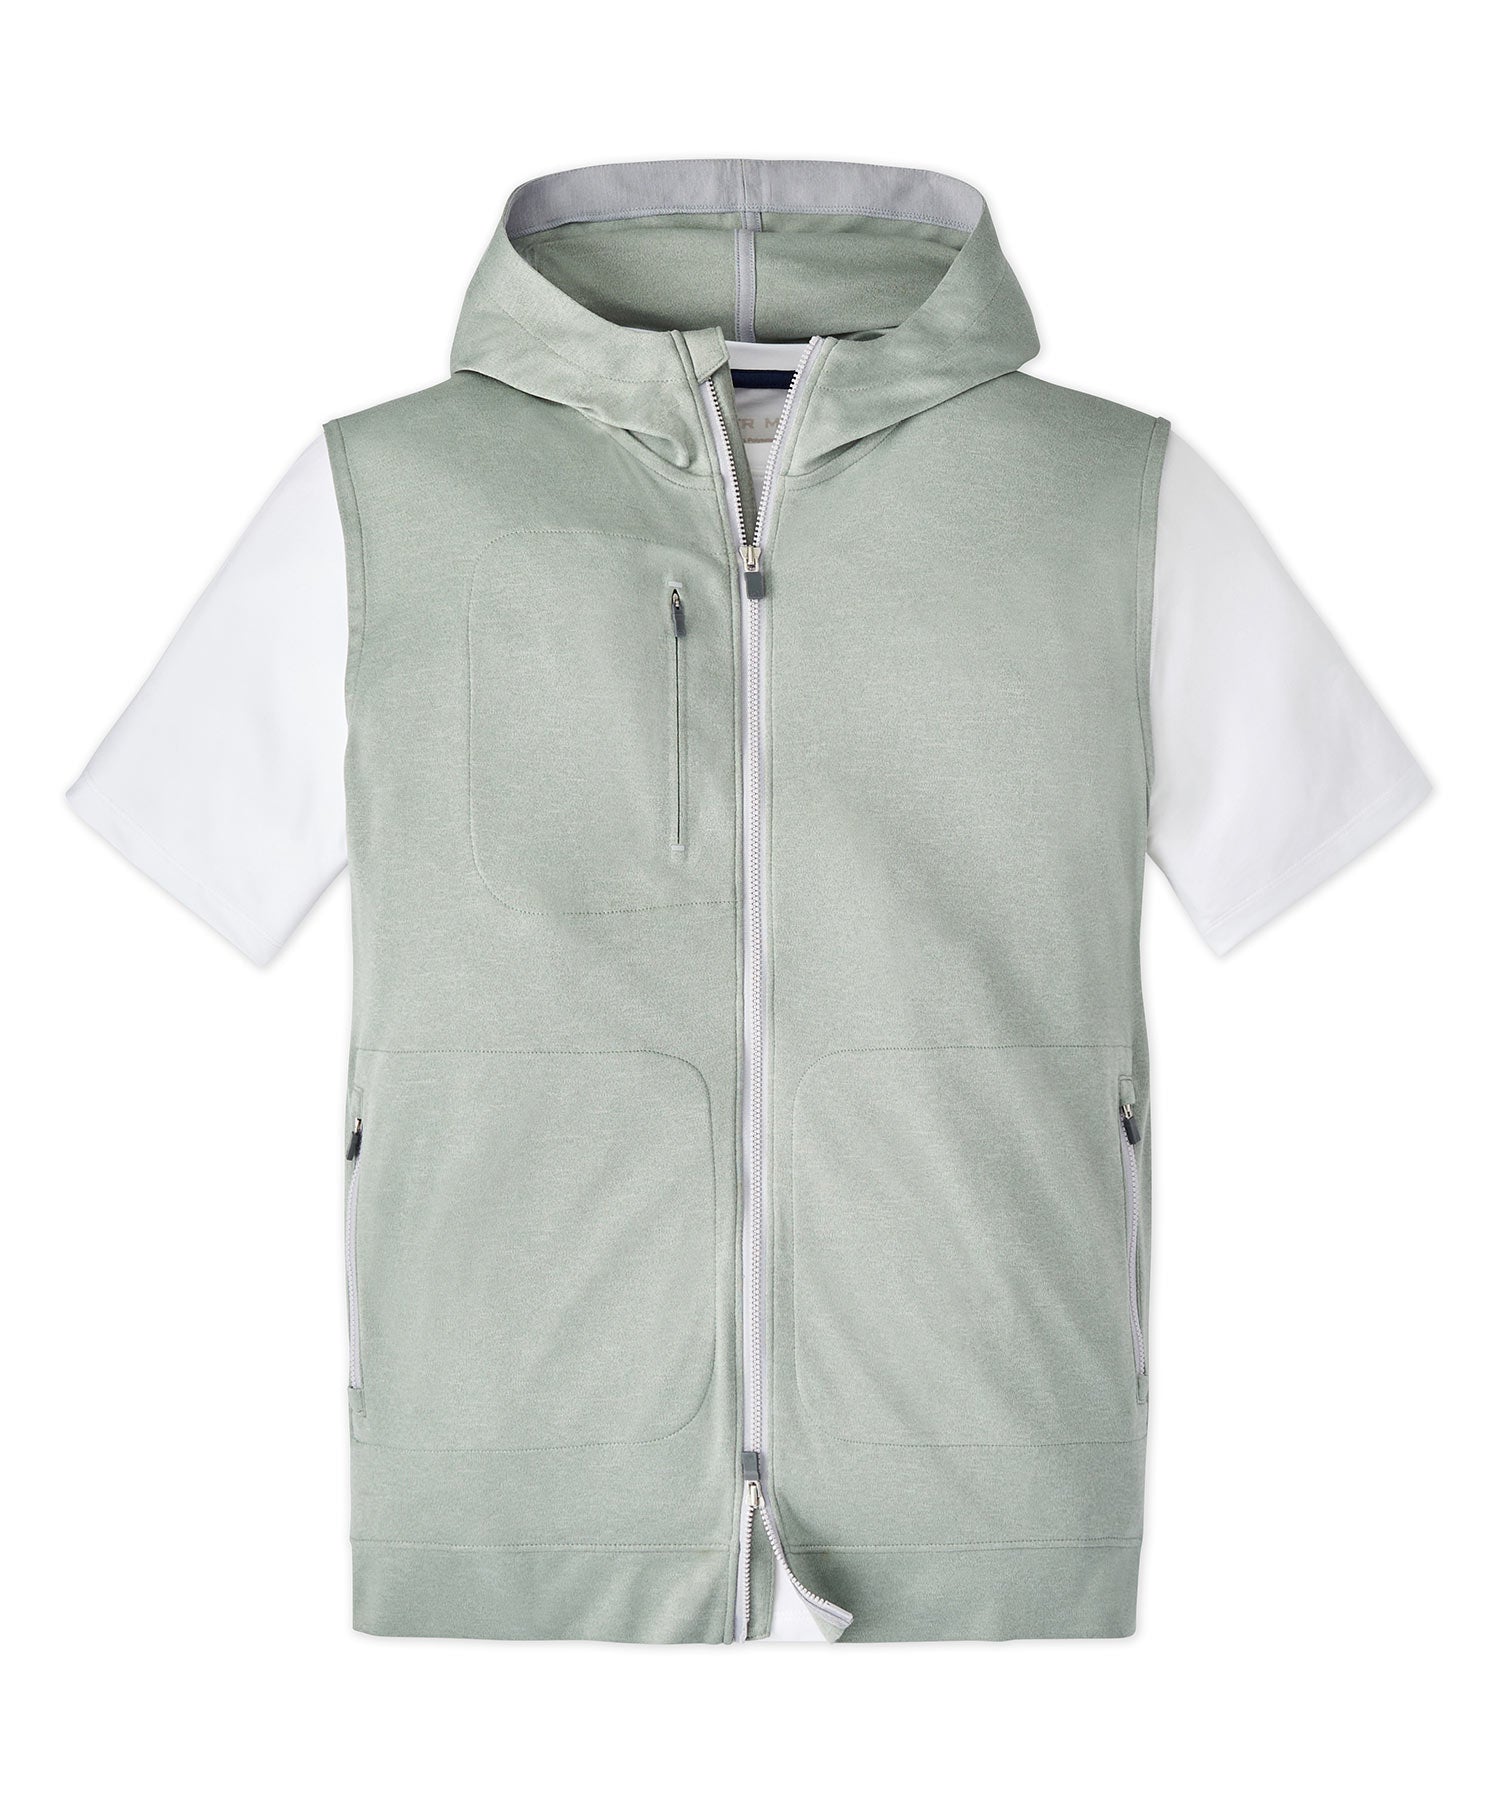 Peter Millar Cloudglow Hoodie Vest, Men's Big & Tall